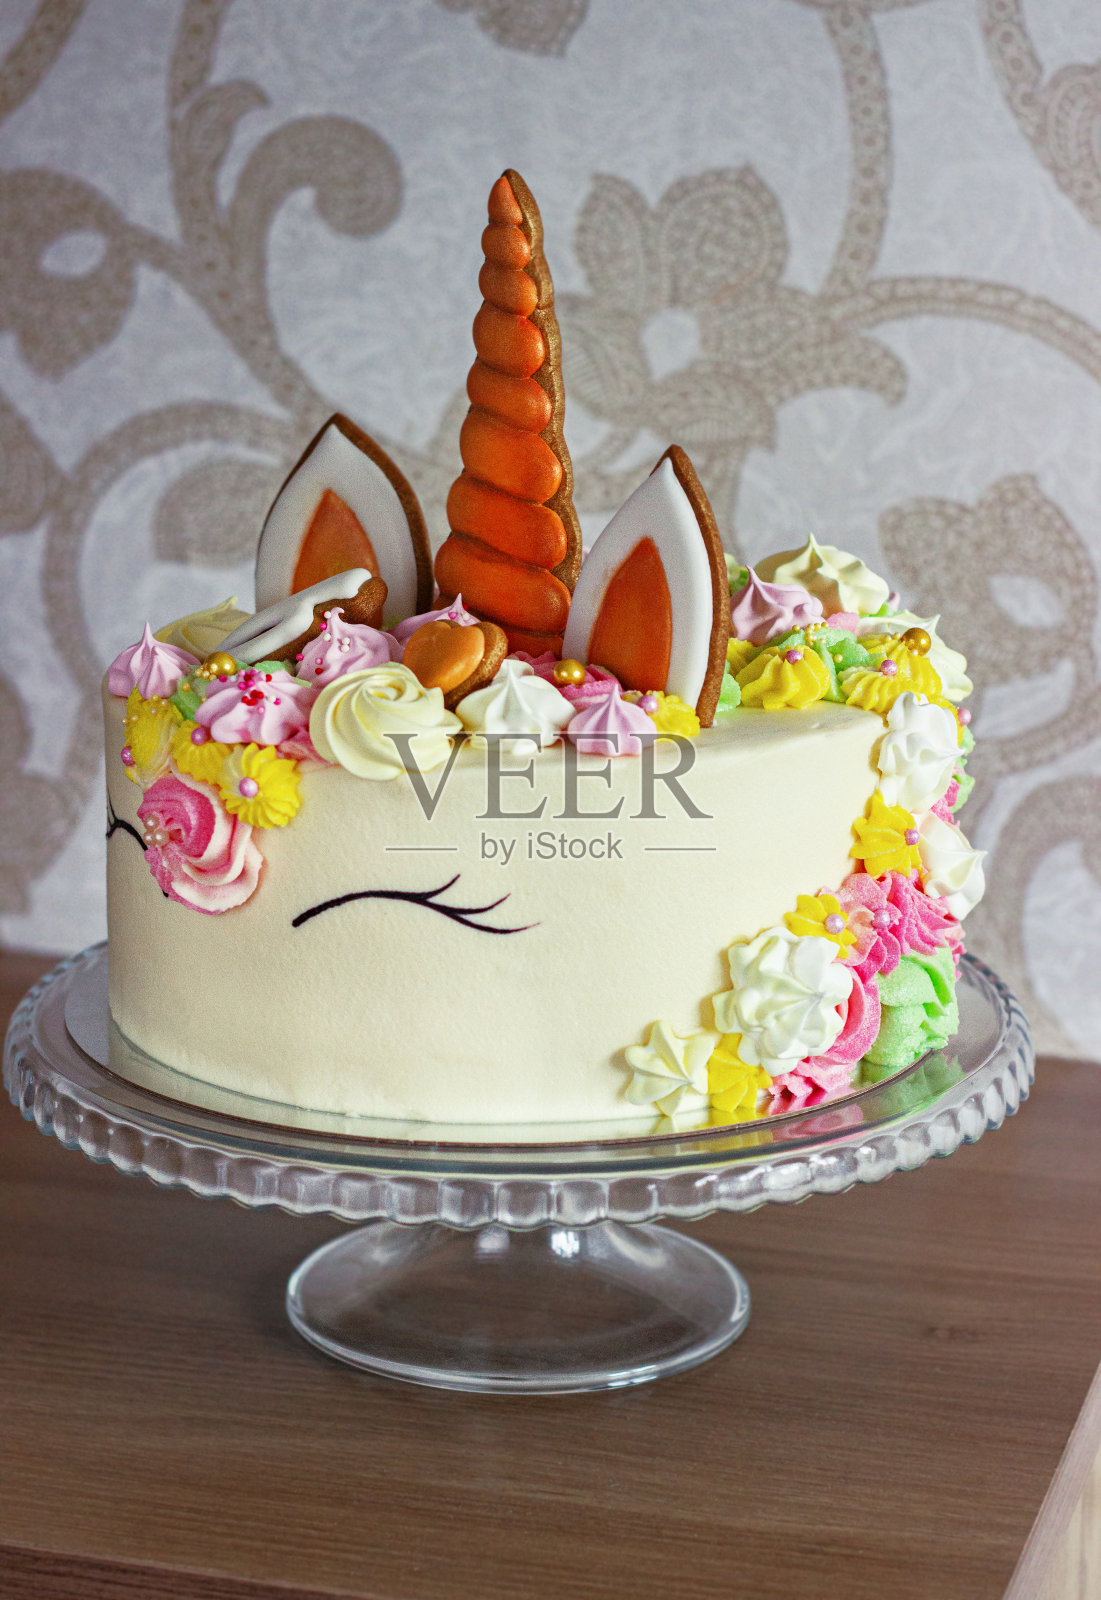 一个美丽明亮的蛋糕装饰在幻想独角兽的形式。为孩子们的生日设计的节日甜点照片摄影图片